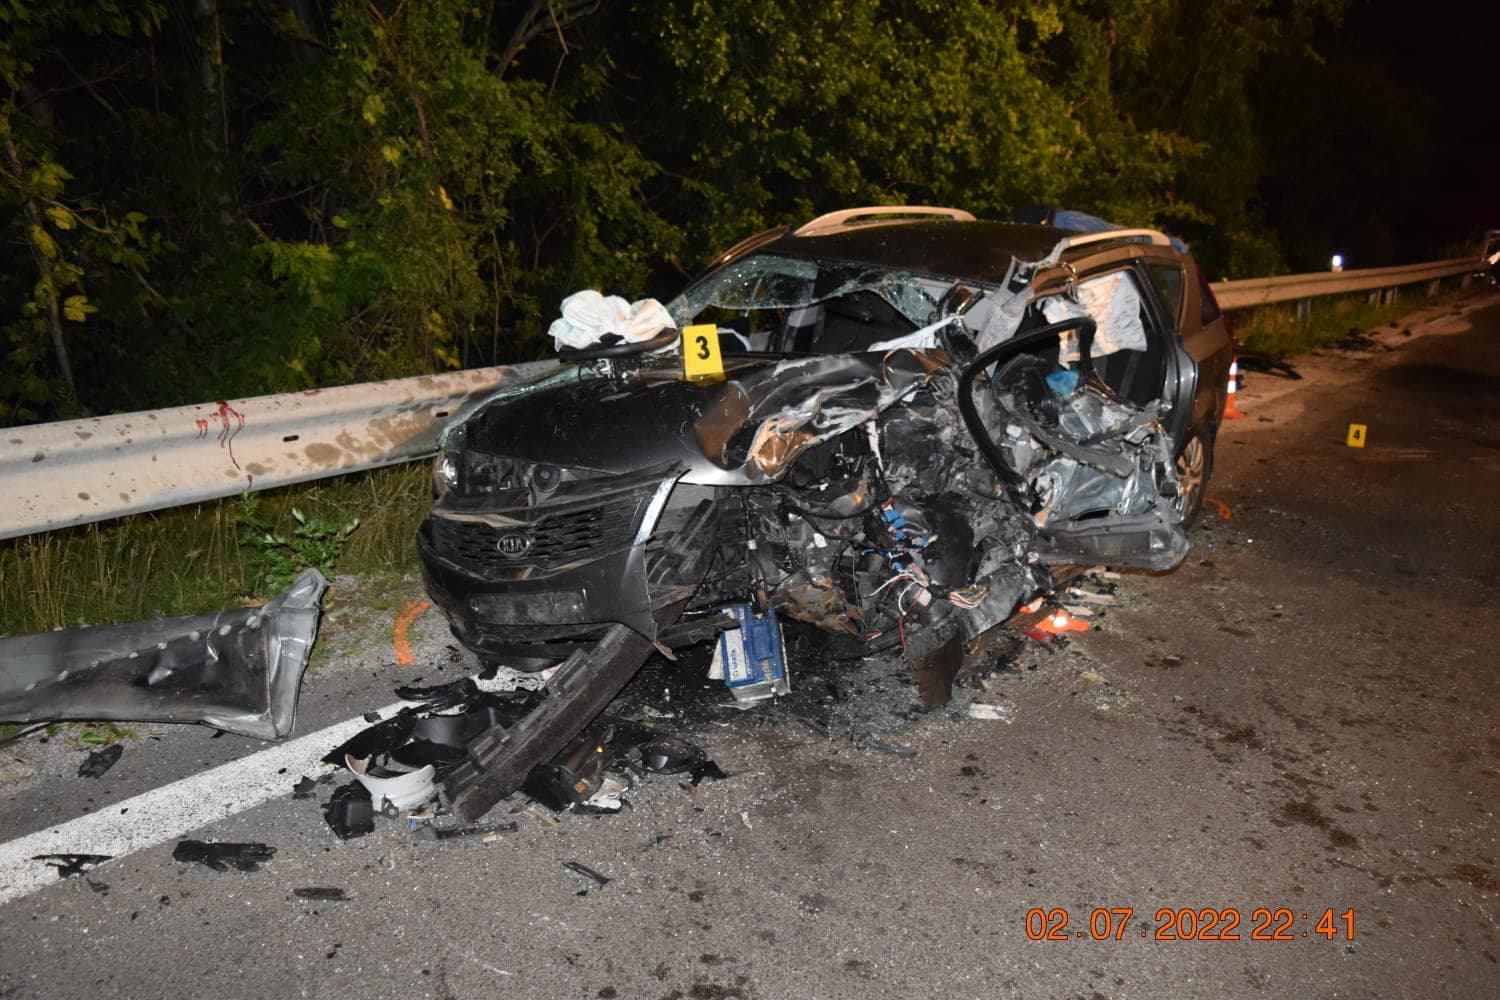 Tragikus közúti baleset történt, a vétkes sofőr elmenekült a helyszínről